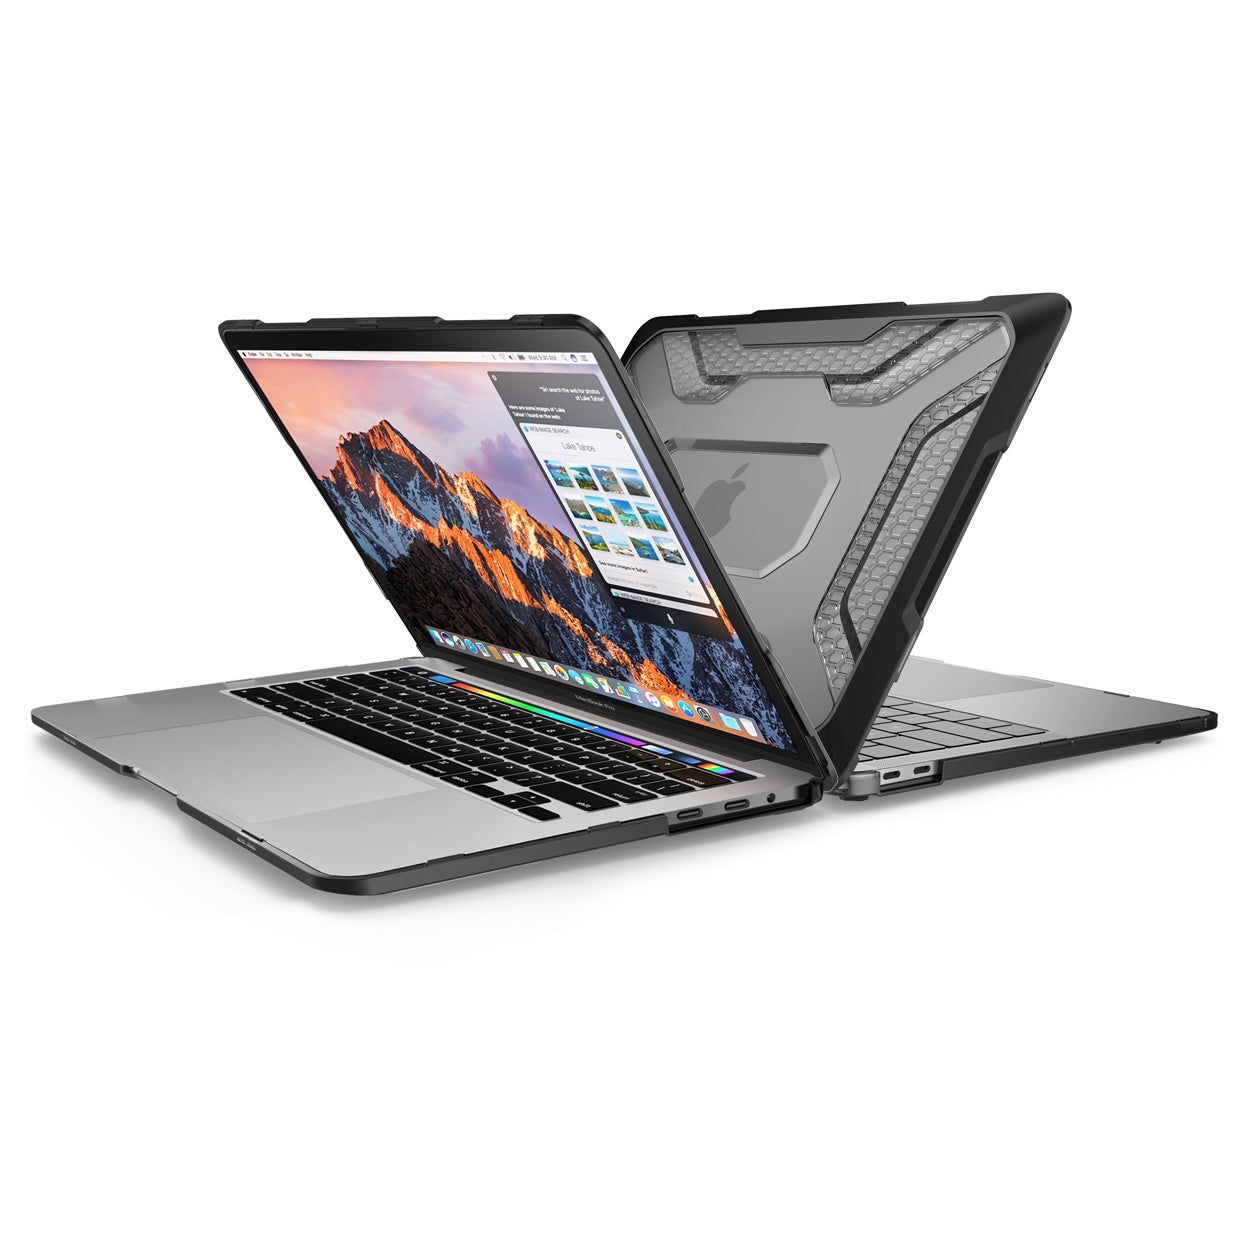 Schutzhülle Supcase UB Rugged für MacBook Pro 13 2020 - 2016, schwarz